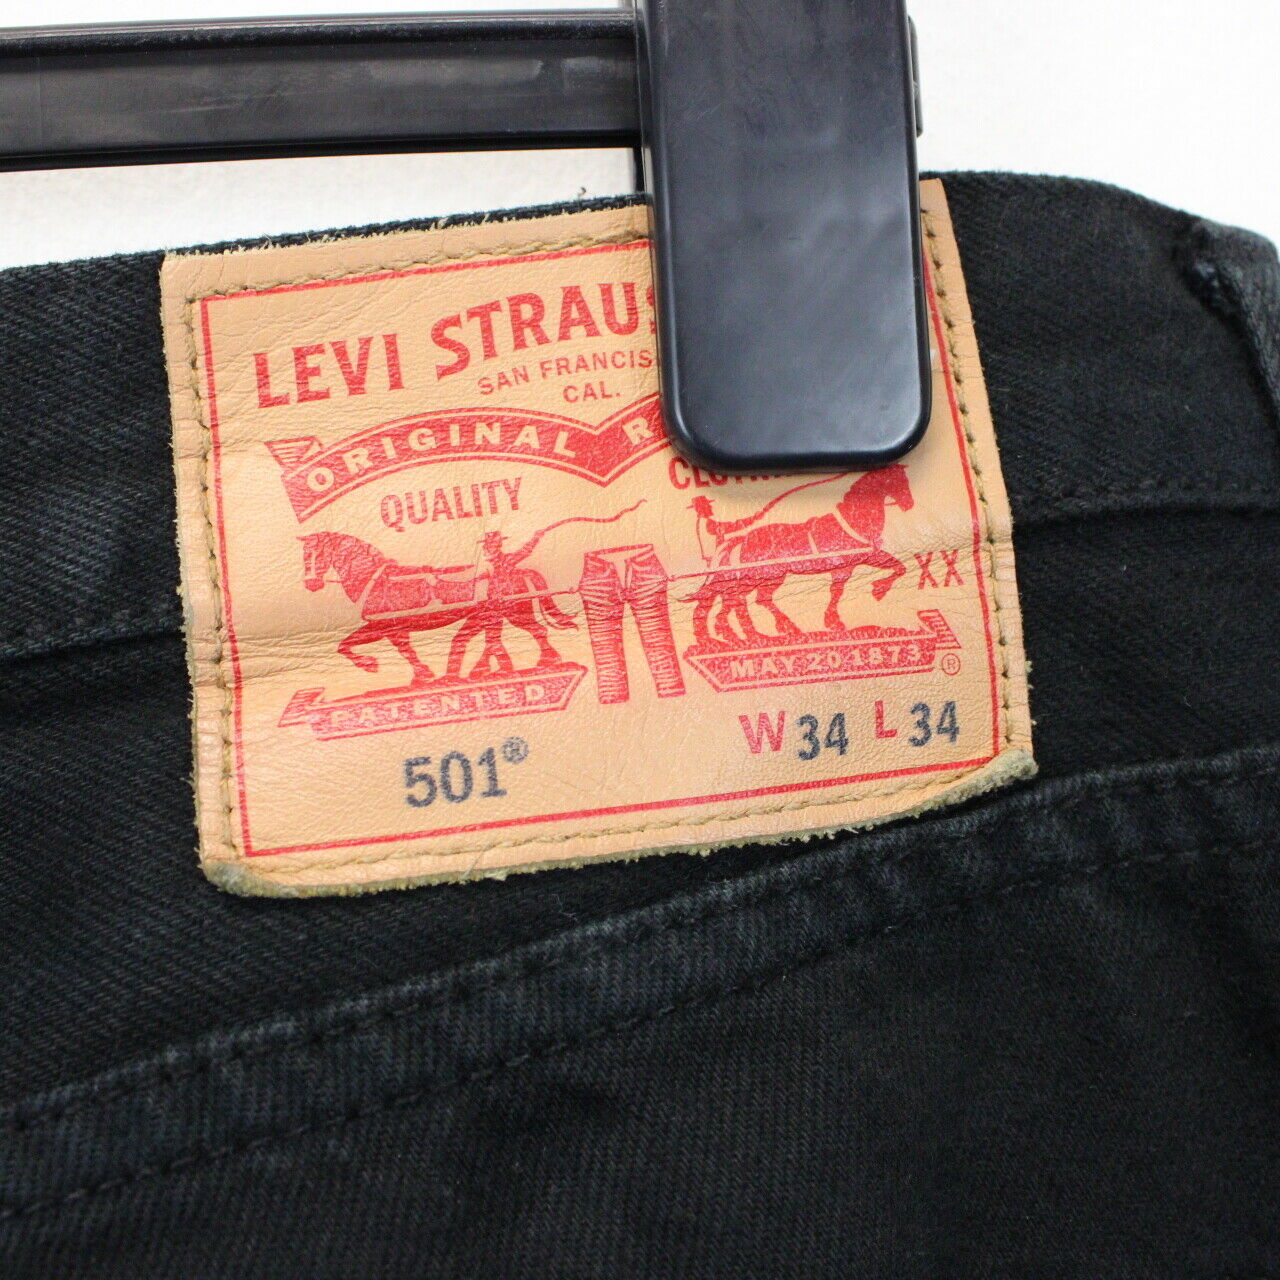 LEVIS 501 Jeans Black | W36 L30